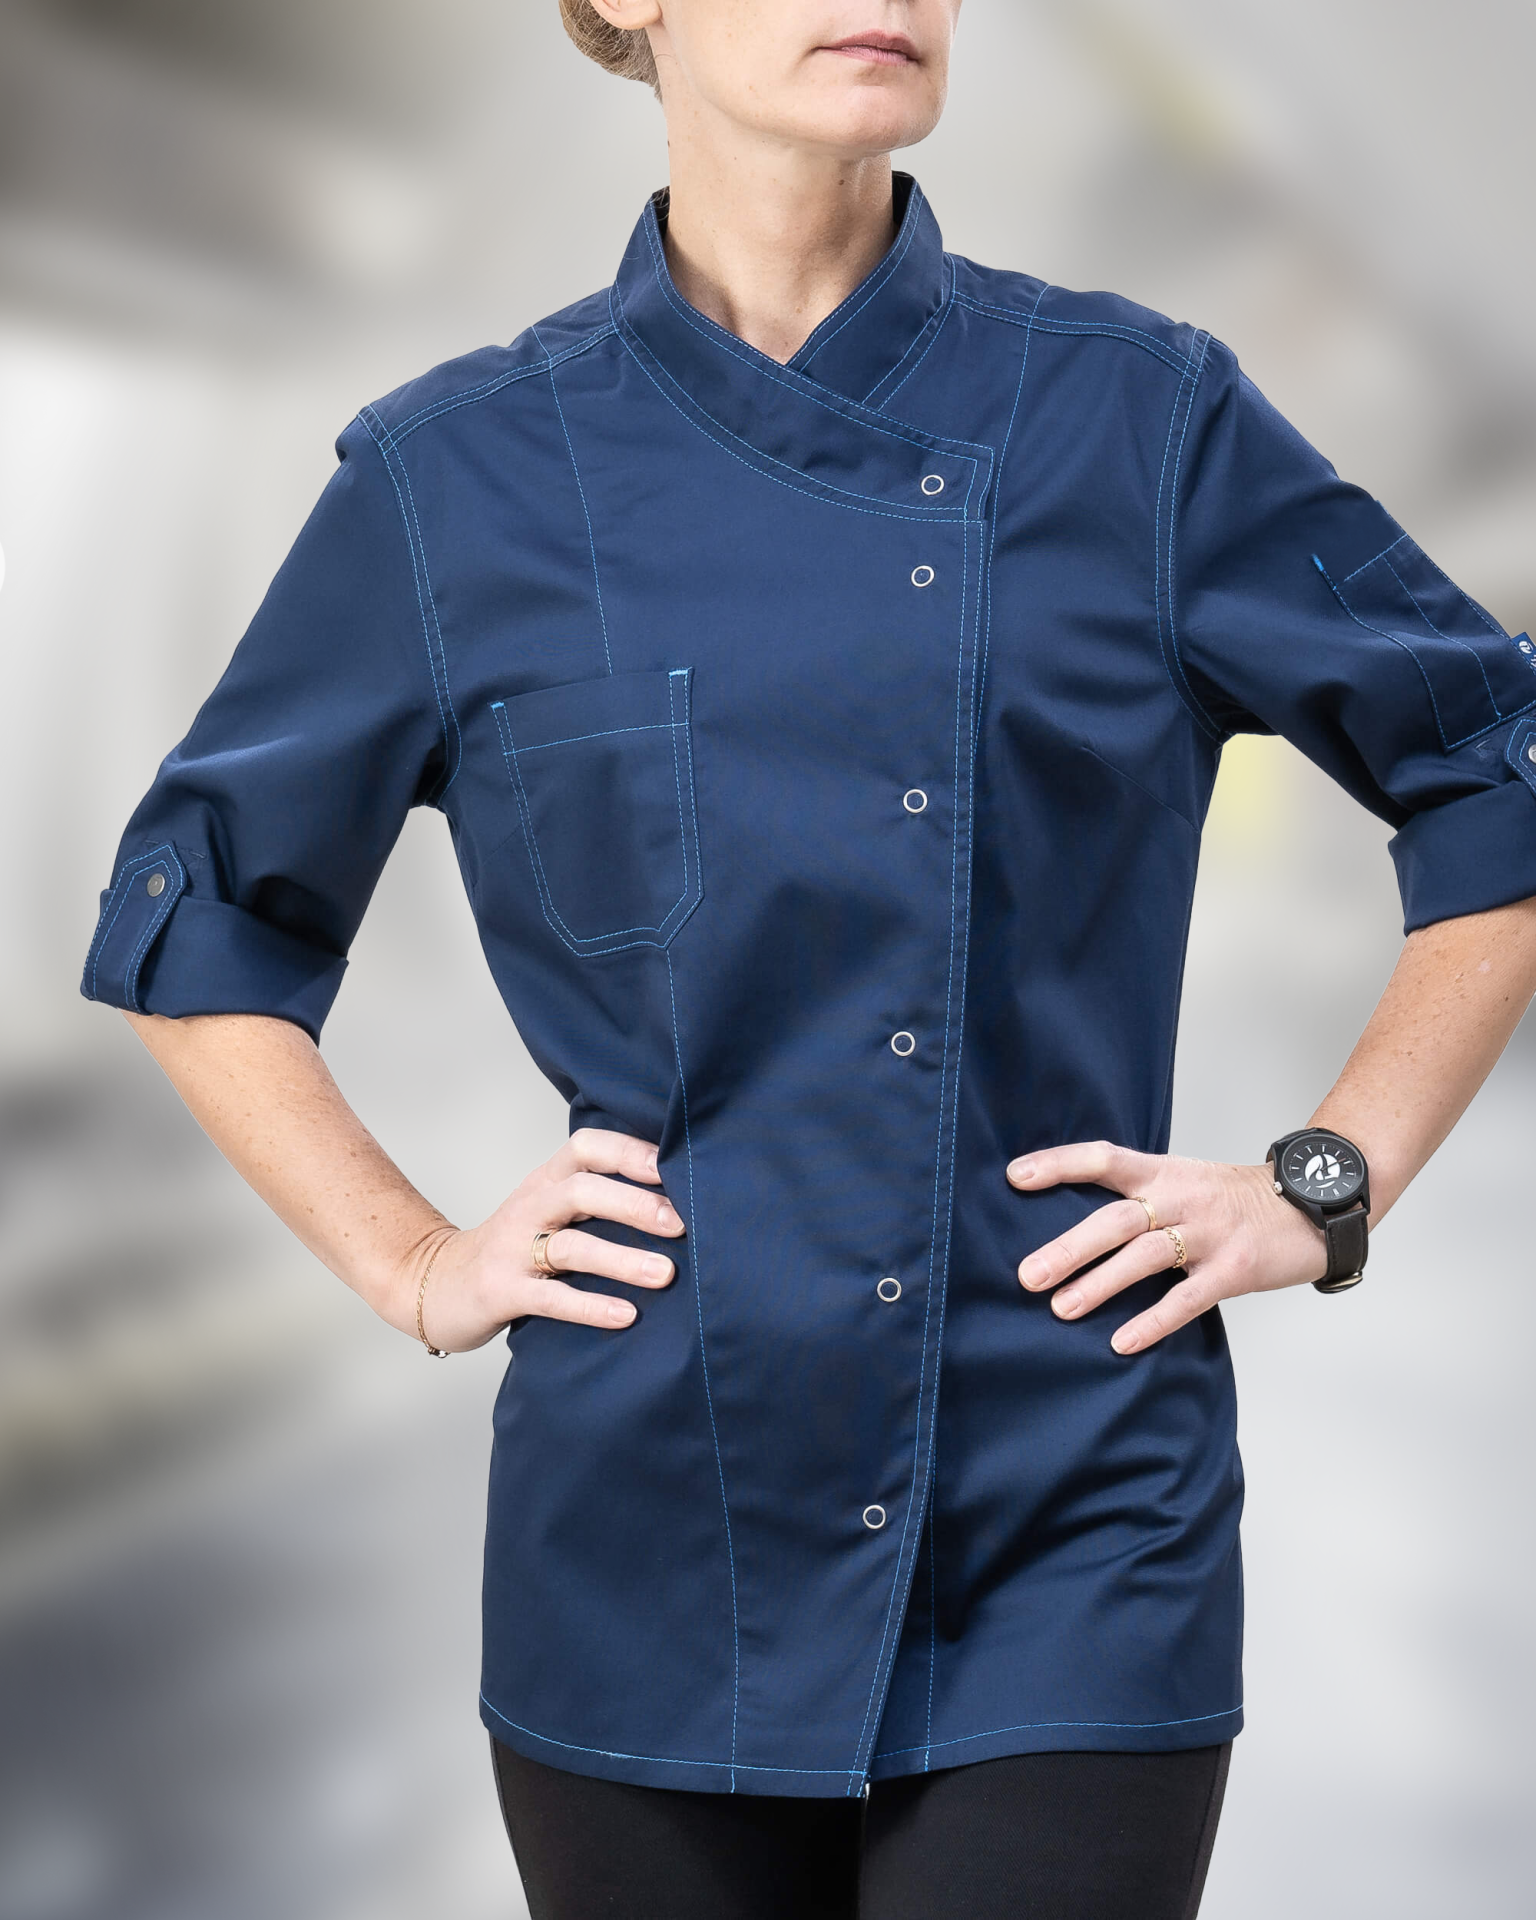 Spor Kesim Mavi Kadın Aşçı Ceketi | Şık ve Rahat Mutfak Modası